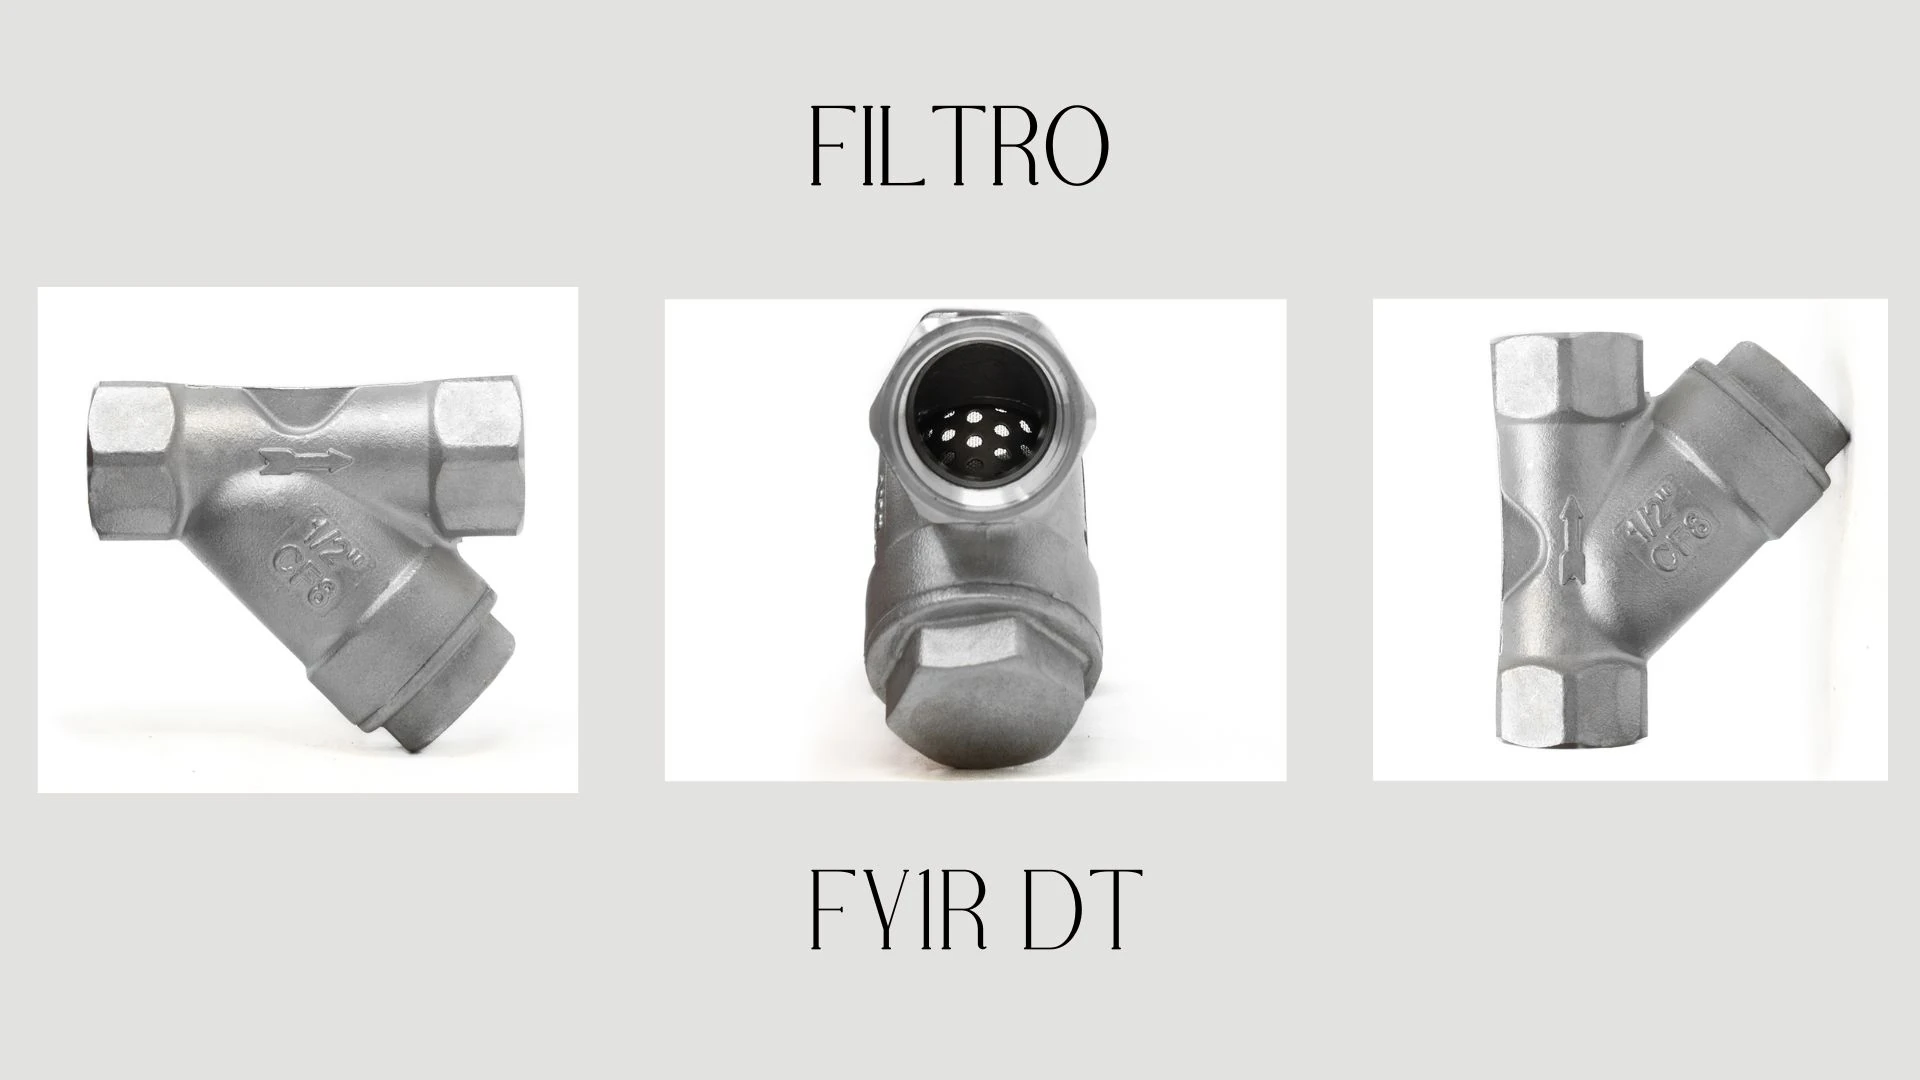 Filtro FY1R DT 